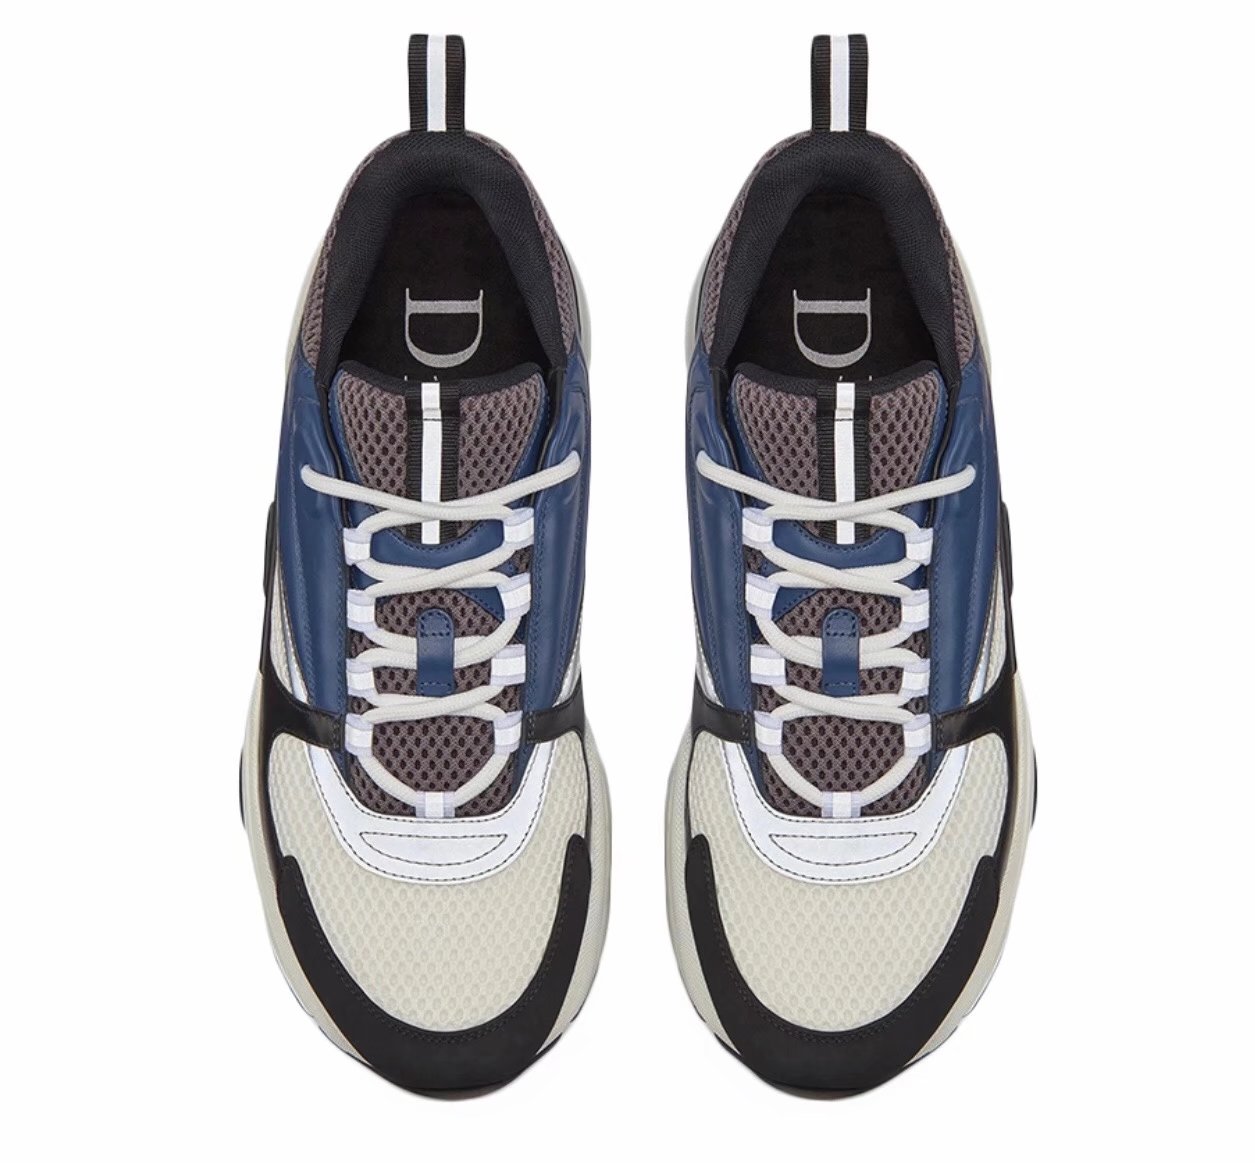 Buy Replica Dior B22 Sneakers In Blue Black Gray - Buy Designer Bags ...